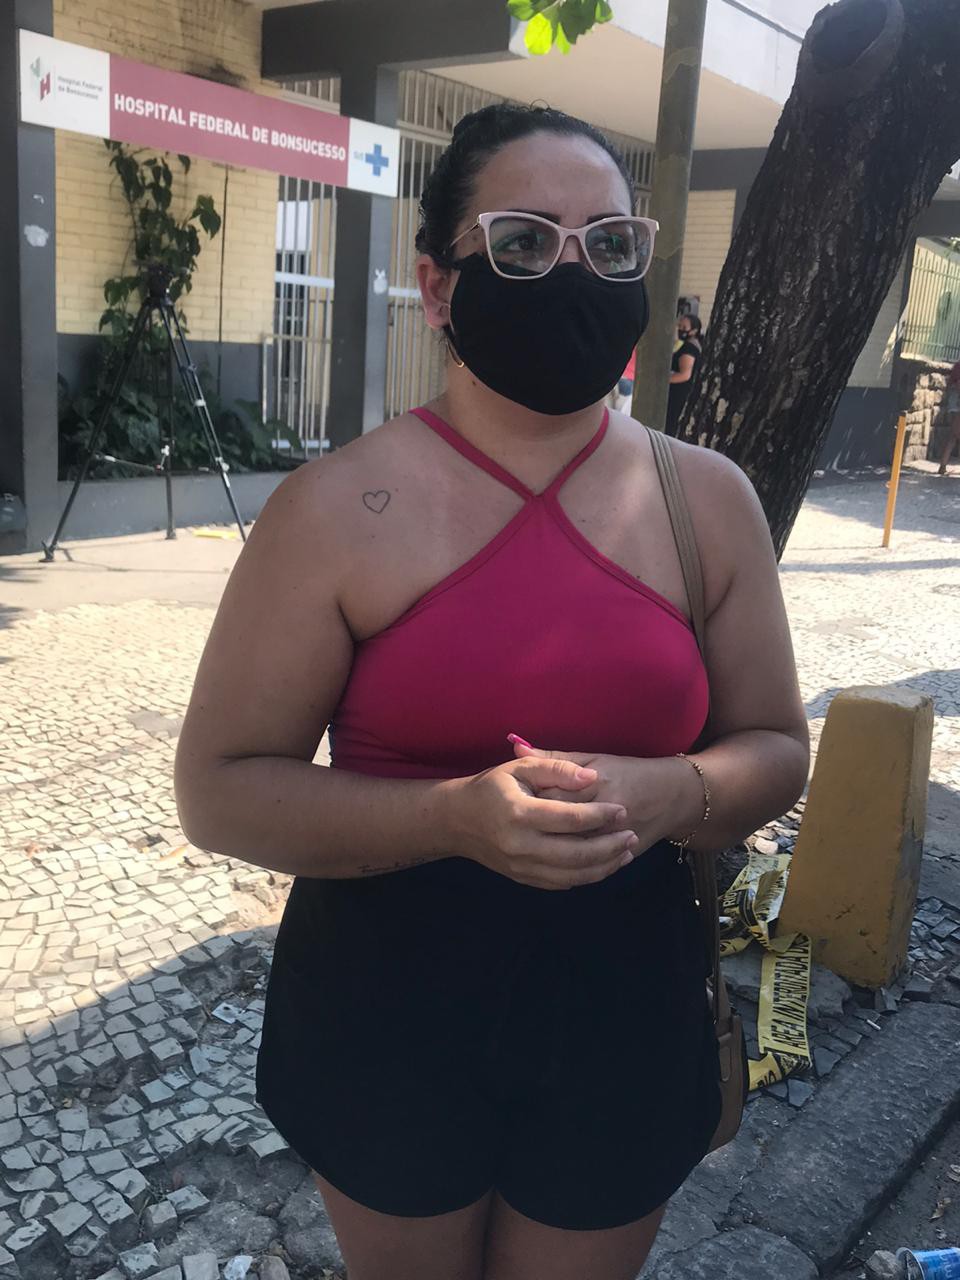 Cíntia de Oliveira Pereira, 30 anos, - Agência O DIA